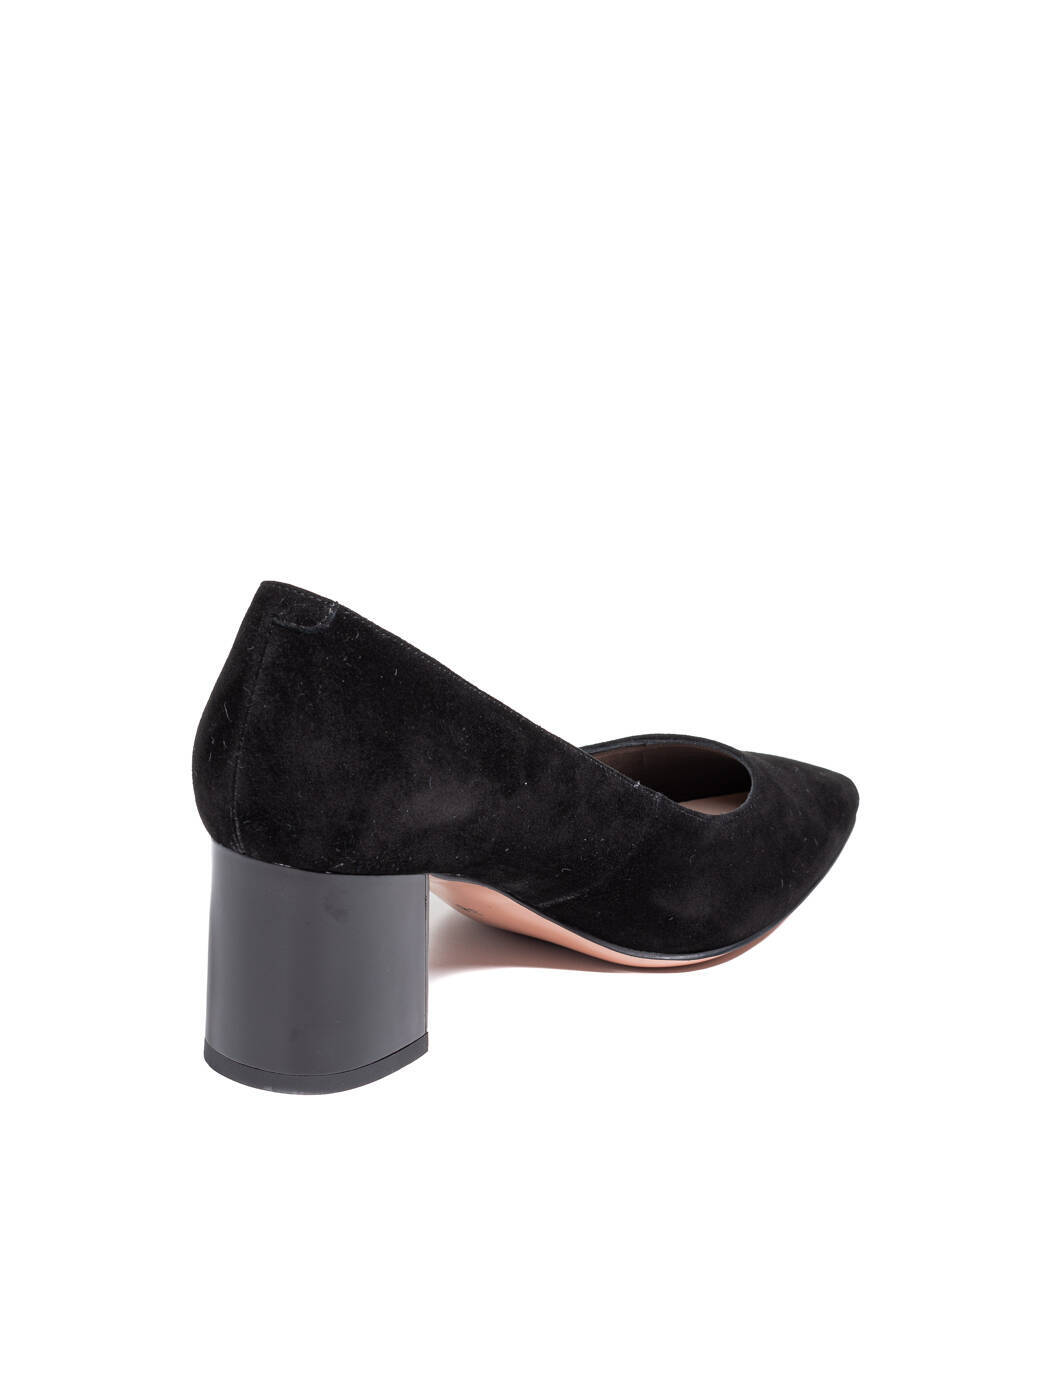 Туфли женские черные замша каблук устойчивый демисезон вид 1